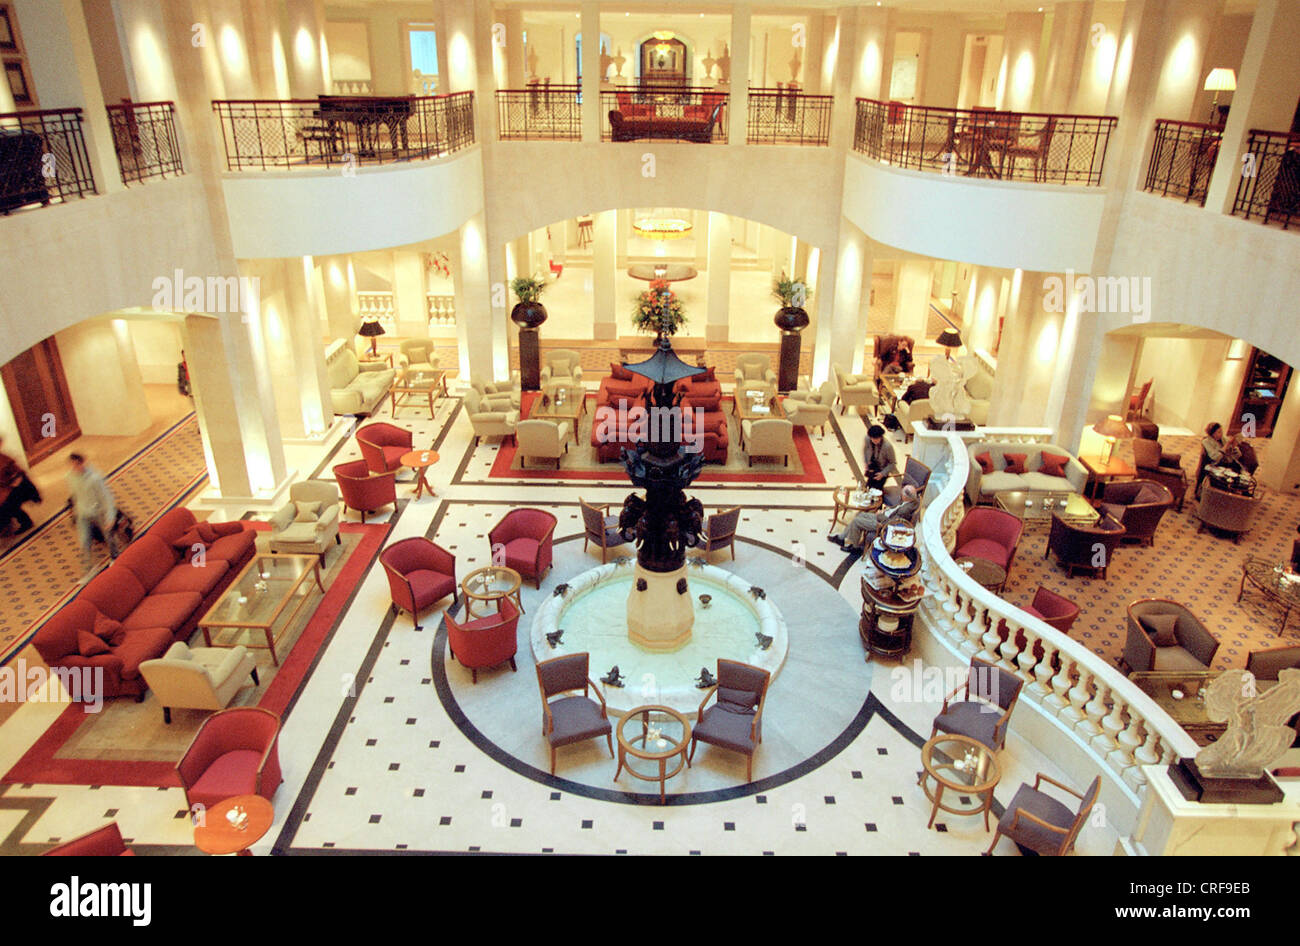 Lobby at the Hotel Adlon, Berlin Stock Photo